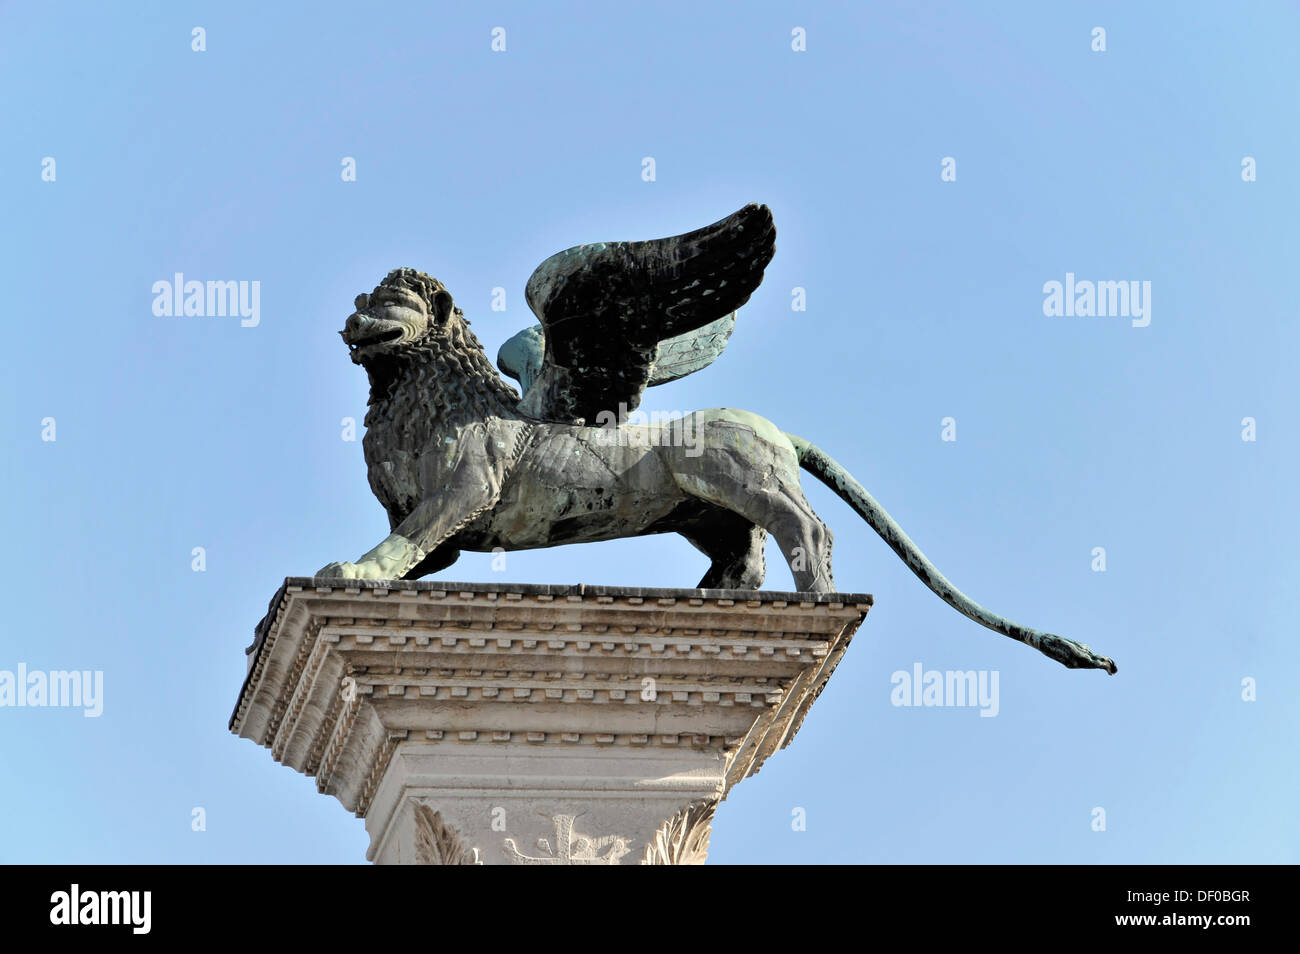 Columna, capital con el león alado de San Marcos, el santo patrono de Venecia, Piazzetta San Marco, la Plaza de San Marcos, en Venecia Foto de stock